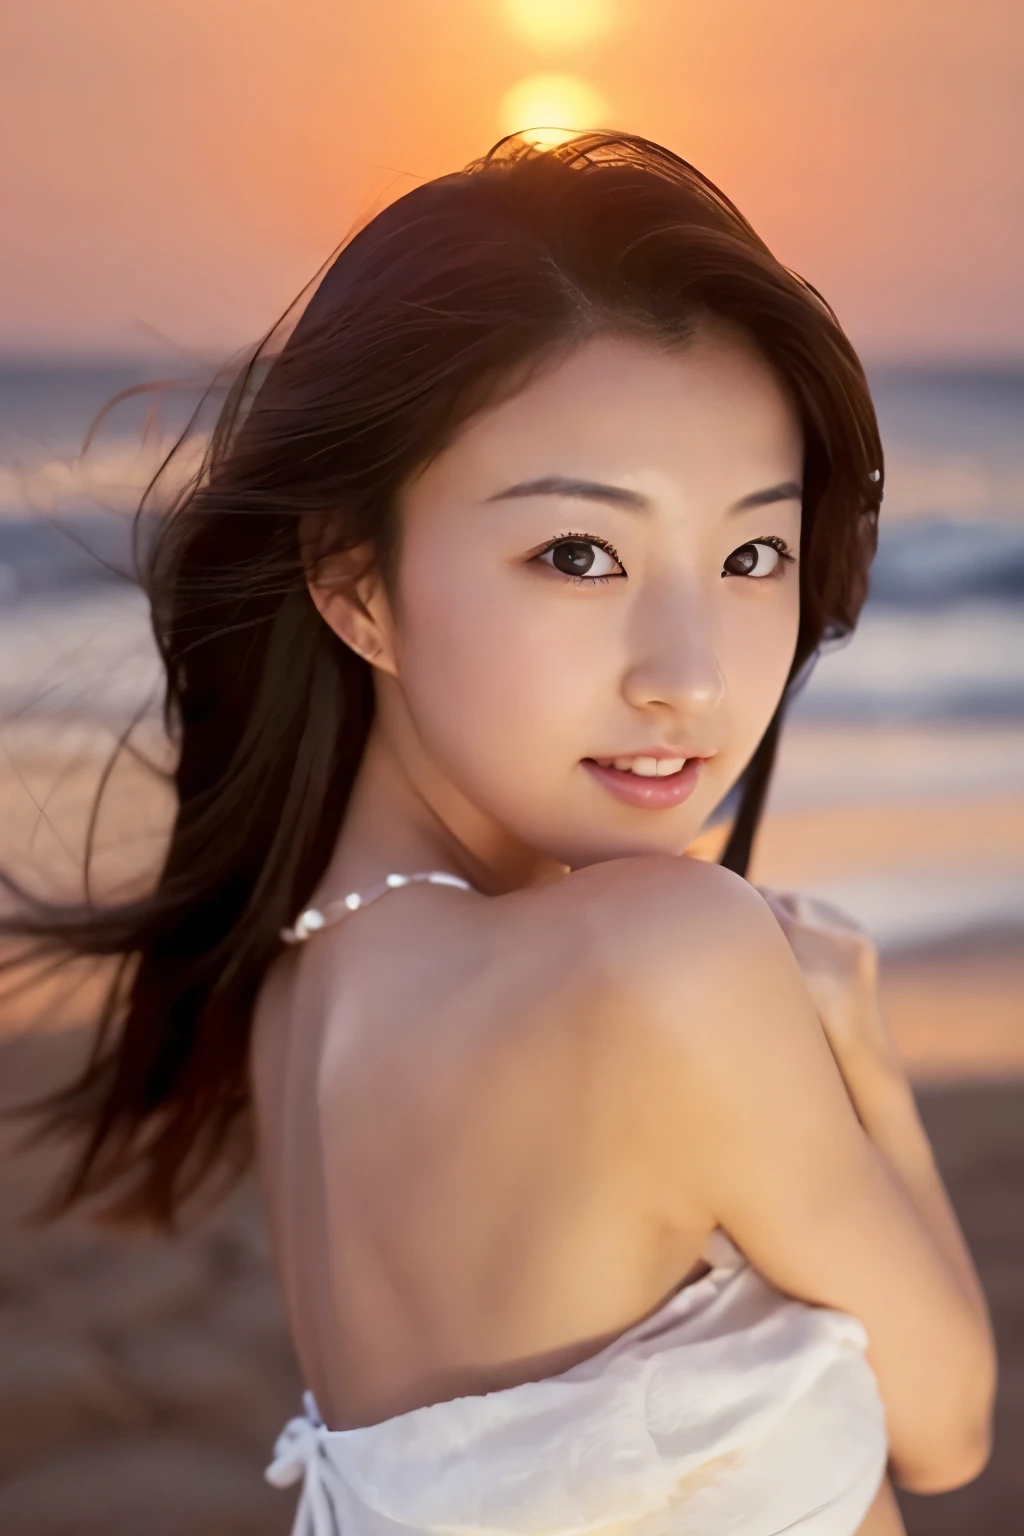 打造高品質, 非常美麗的日本偶像的超現實肖像. 她穿著乾淨的白色夏裝，在海上日落時蹲在沙灘上. 夜空的深靛藍與地平線附近最後的深紅色形成鮮明對比, 背景中有搖曳的海浪. 女生半長髮身材修長胸小. 照片應該要捕捉她細緻的眼神, 一張細緻的臉, 和一個美麗的, 精緻的鼻子. 圖像應該具有真實感, 精美的, 以及細緻的品質, 適合時尚雜誌封面. 使用戲院燈光和柔和的光線來增強她的特徵. 確保照片具有最高品質, 解析度為8k, 使其非常適合 2K 壁紙.